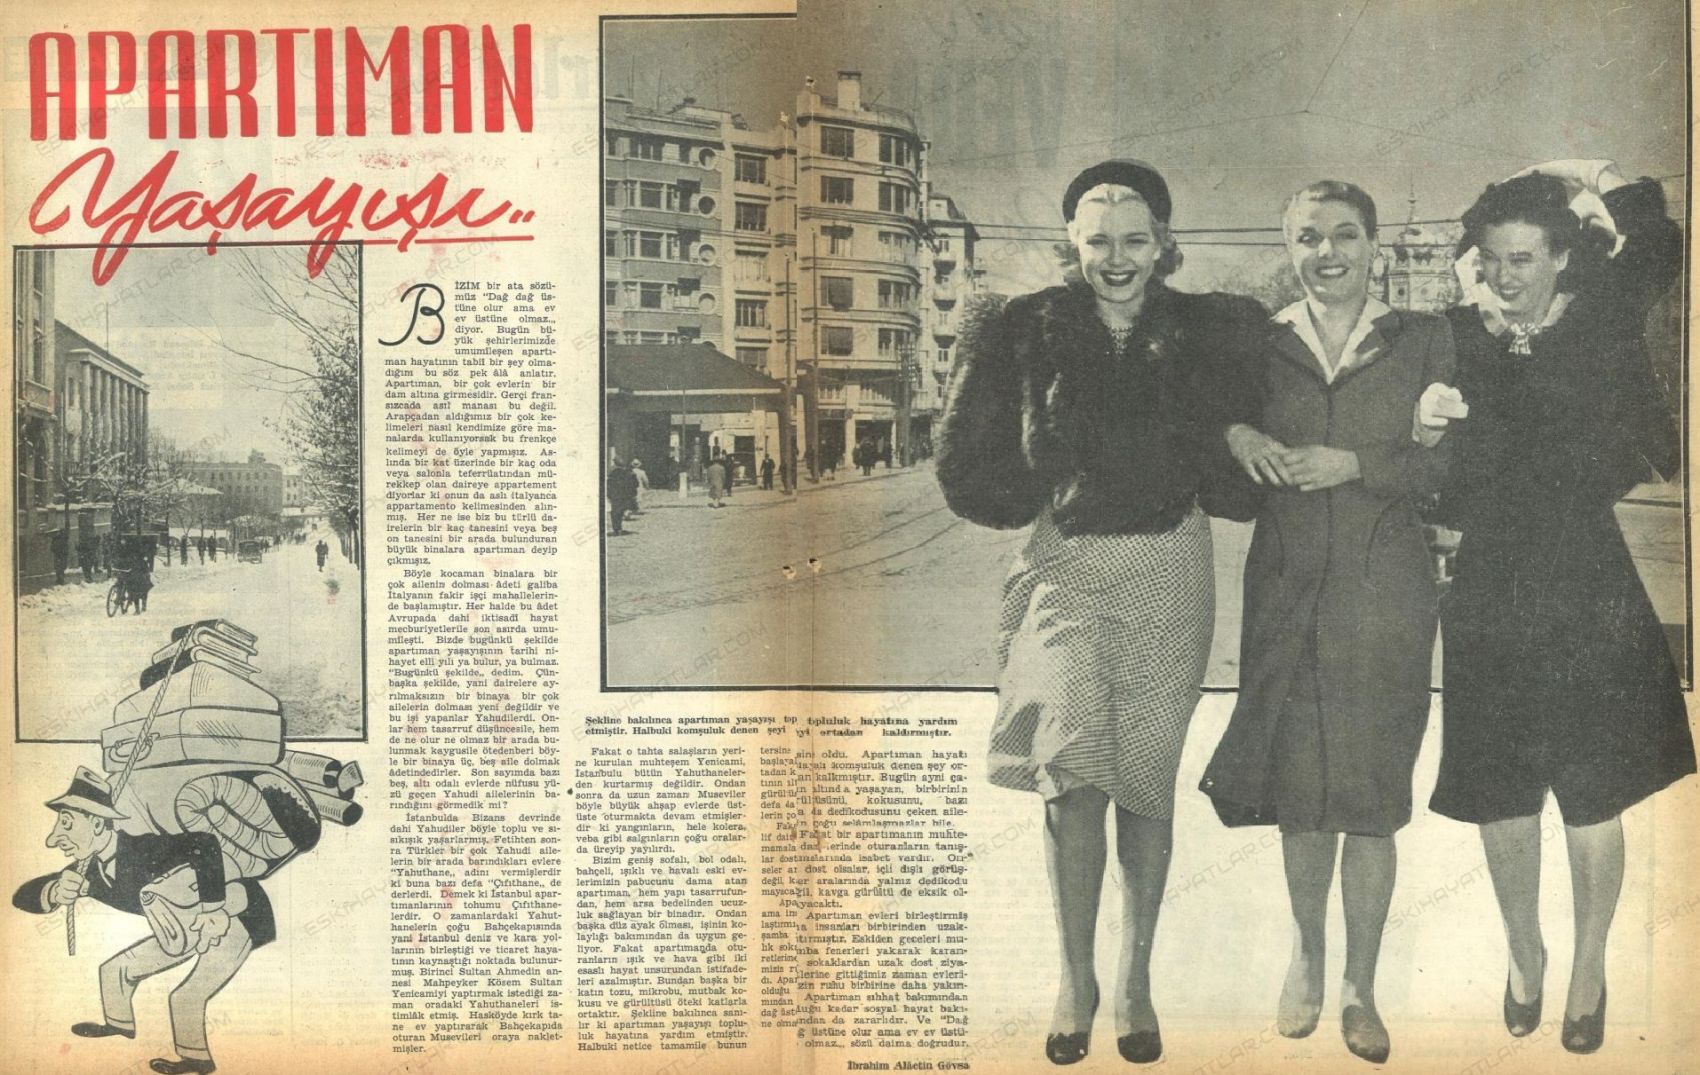 0425-yedigun-dergisi-arsivleri-1945-yilinda-turkiye-ilk-apartmanlar-nasildi (5)